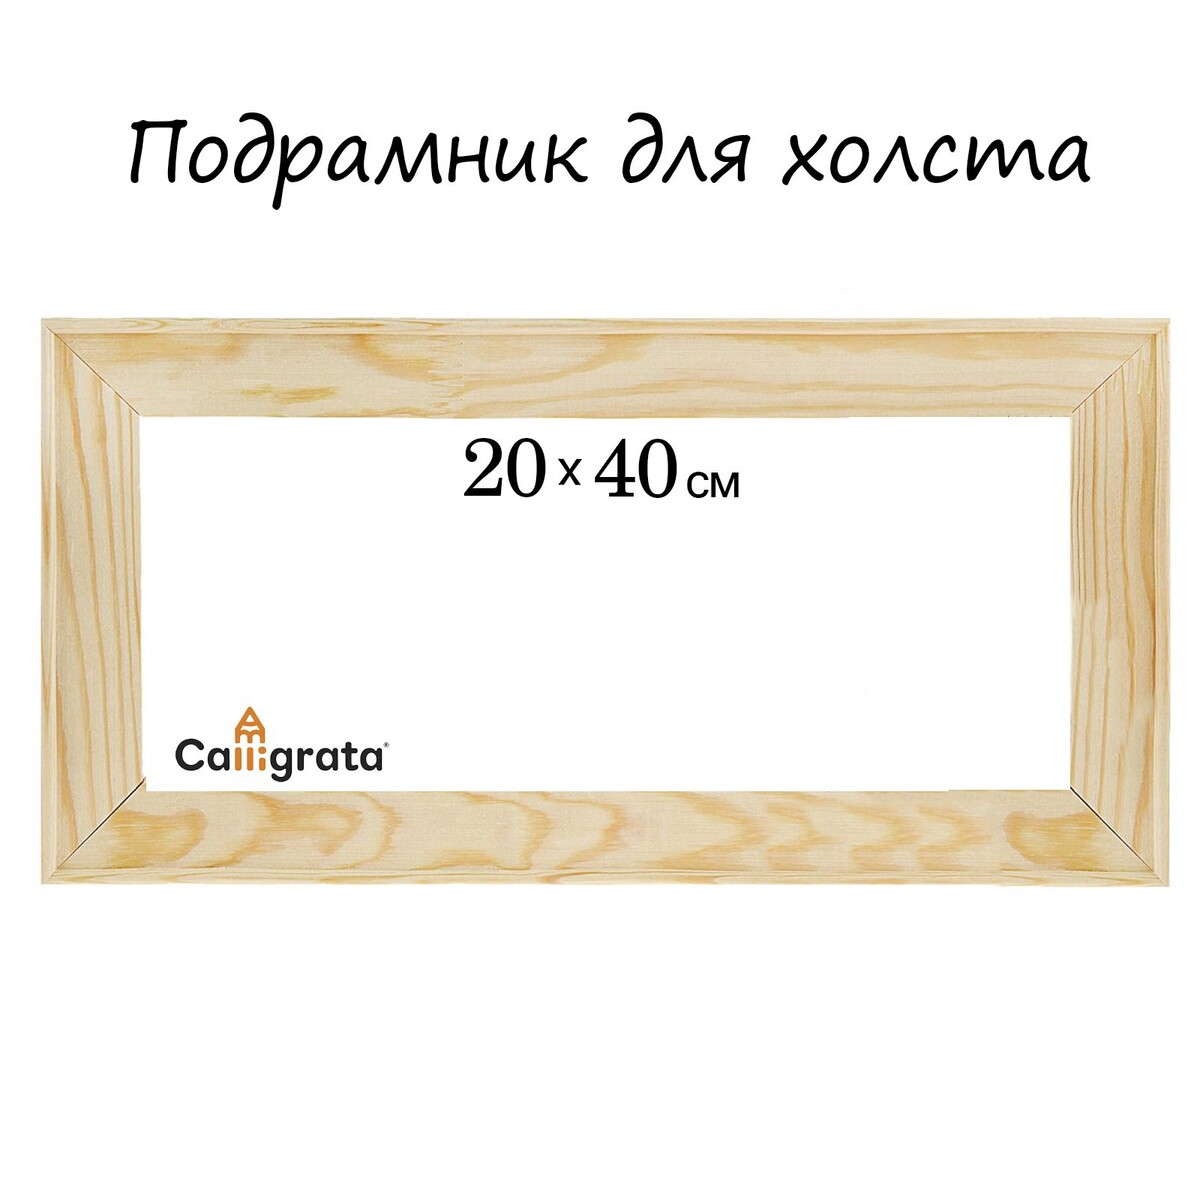 Подрамник для холста calligrata, 1.8 x 20 x 40 см, ширина рамы 36 мм, сосна подрамник для холста calligrata 1 8 x 20 x 20 см ширина рамы 36 мм сосна